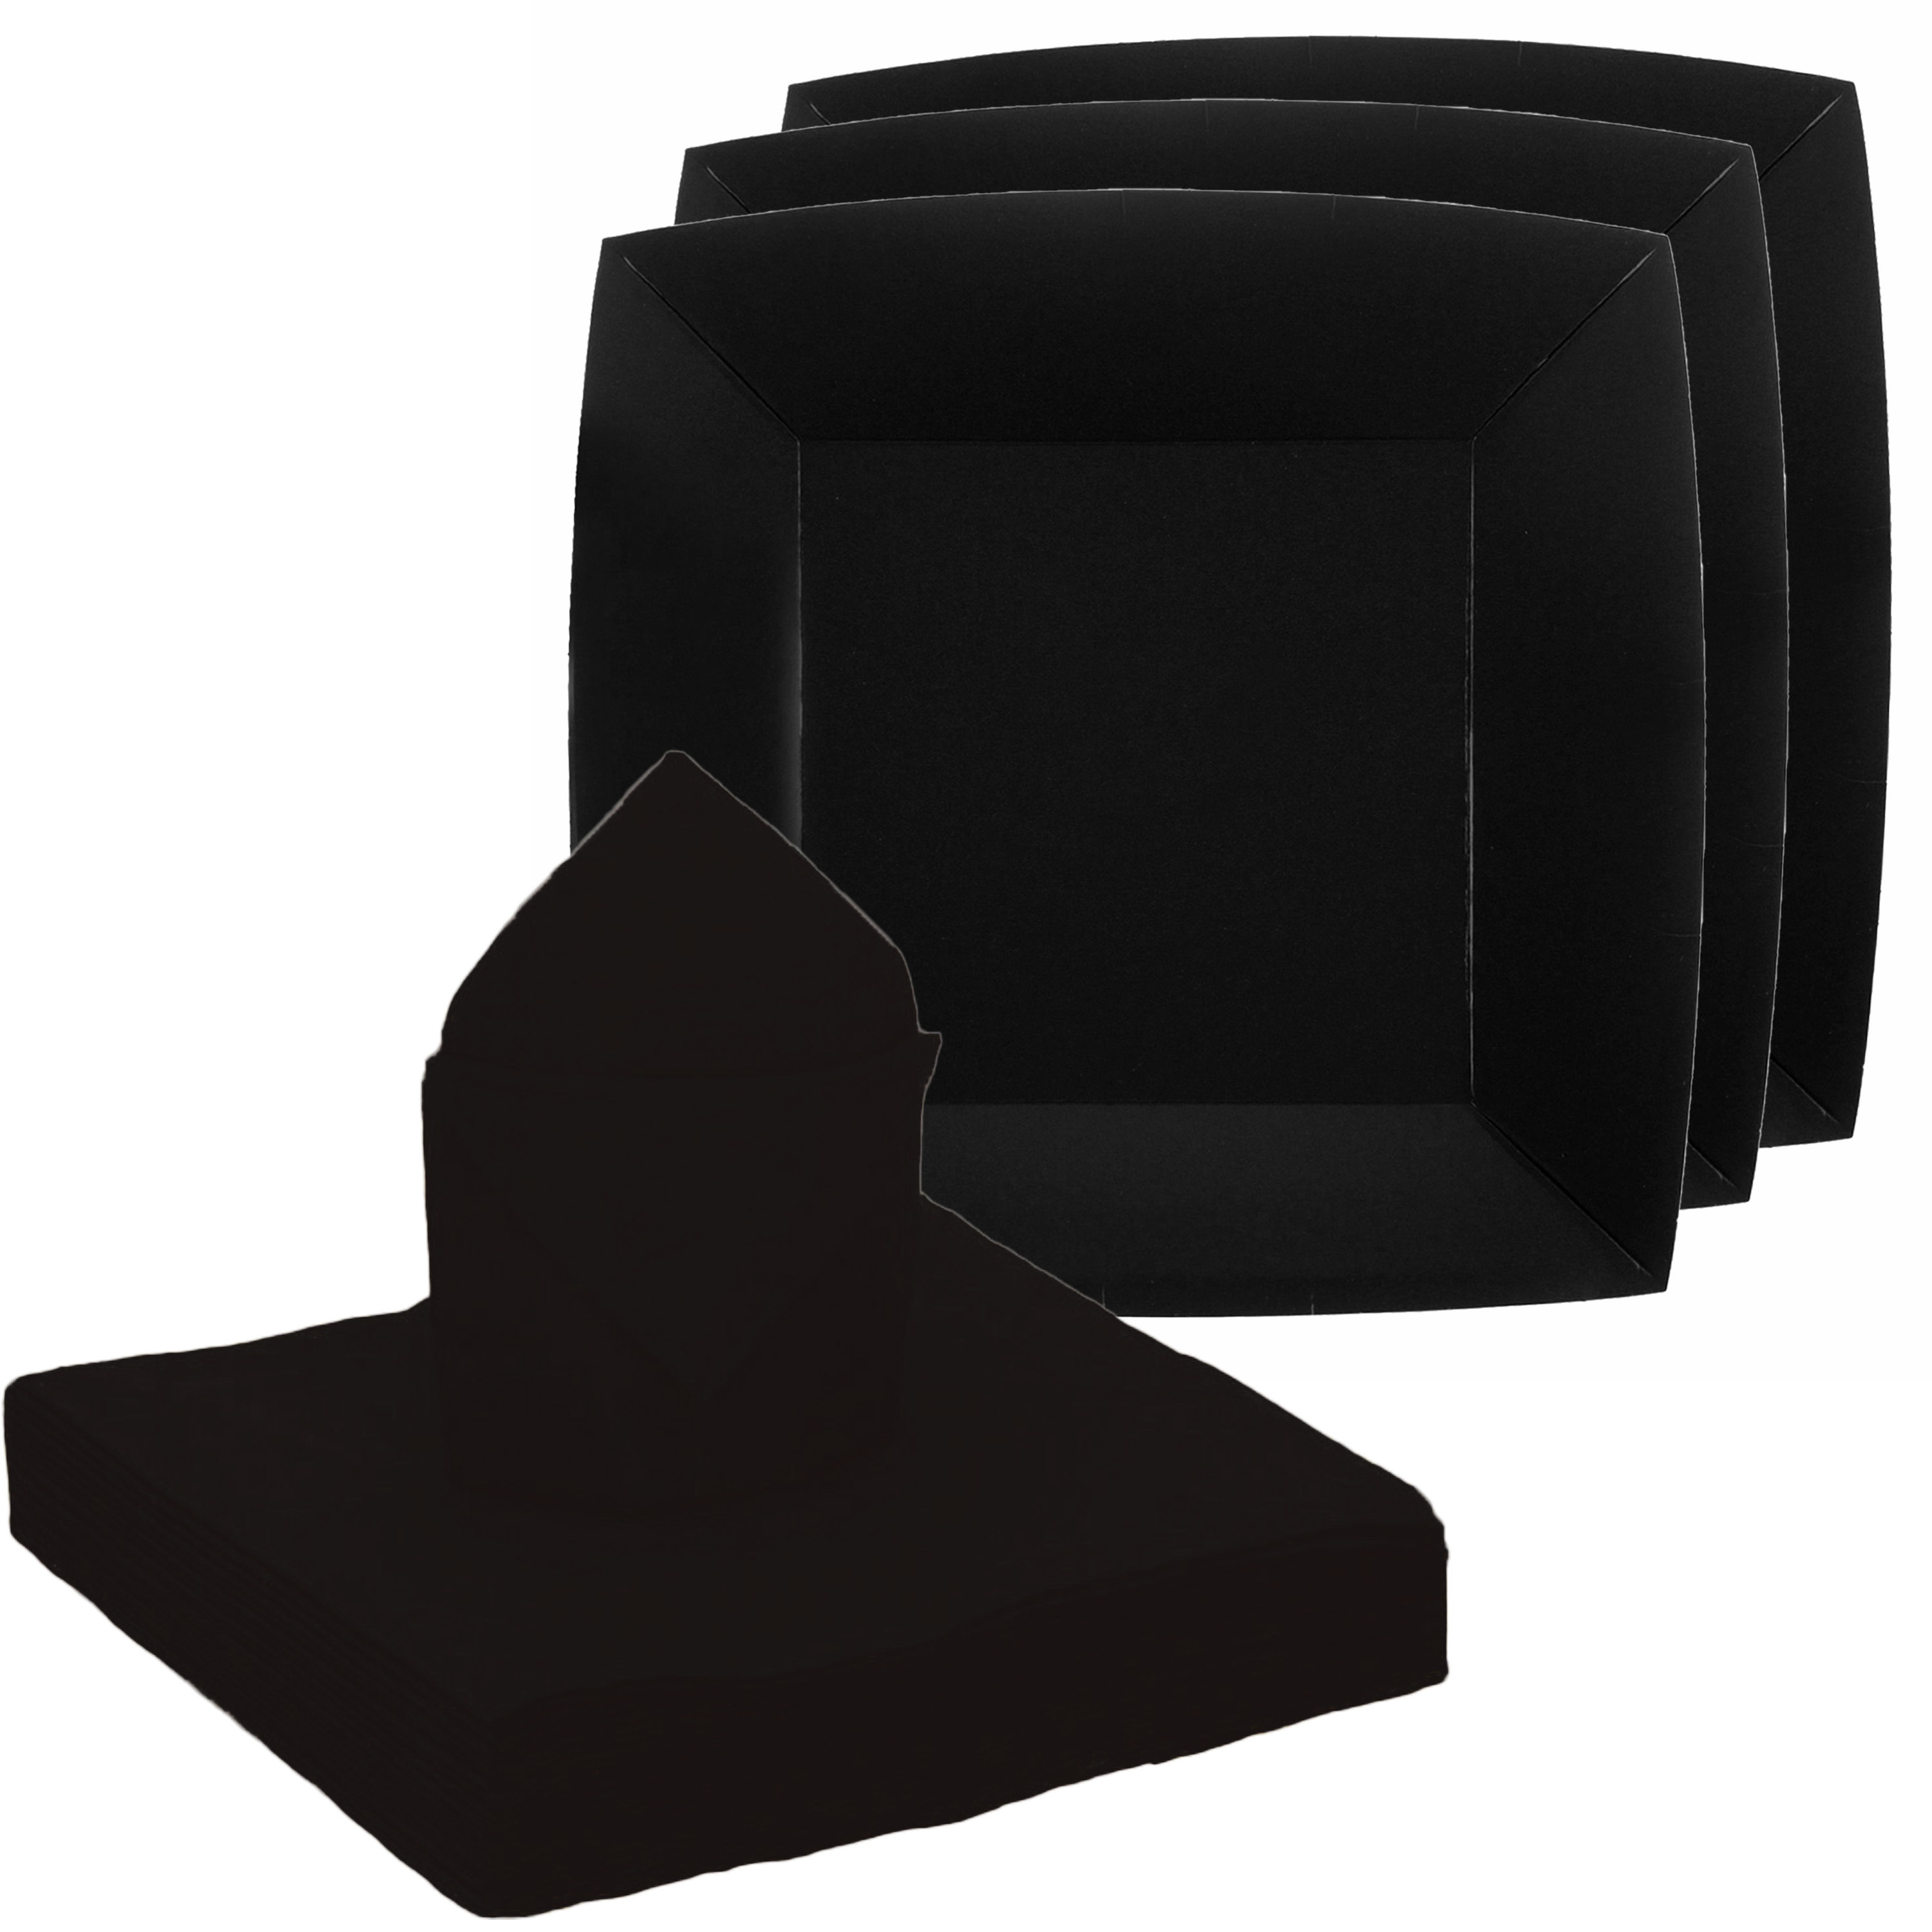 Feest-verjaardag servies set 10x gebaksbordjes-25x servetten zwart karton